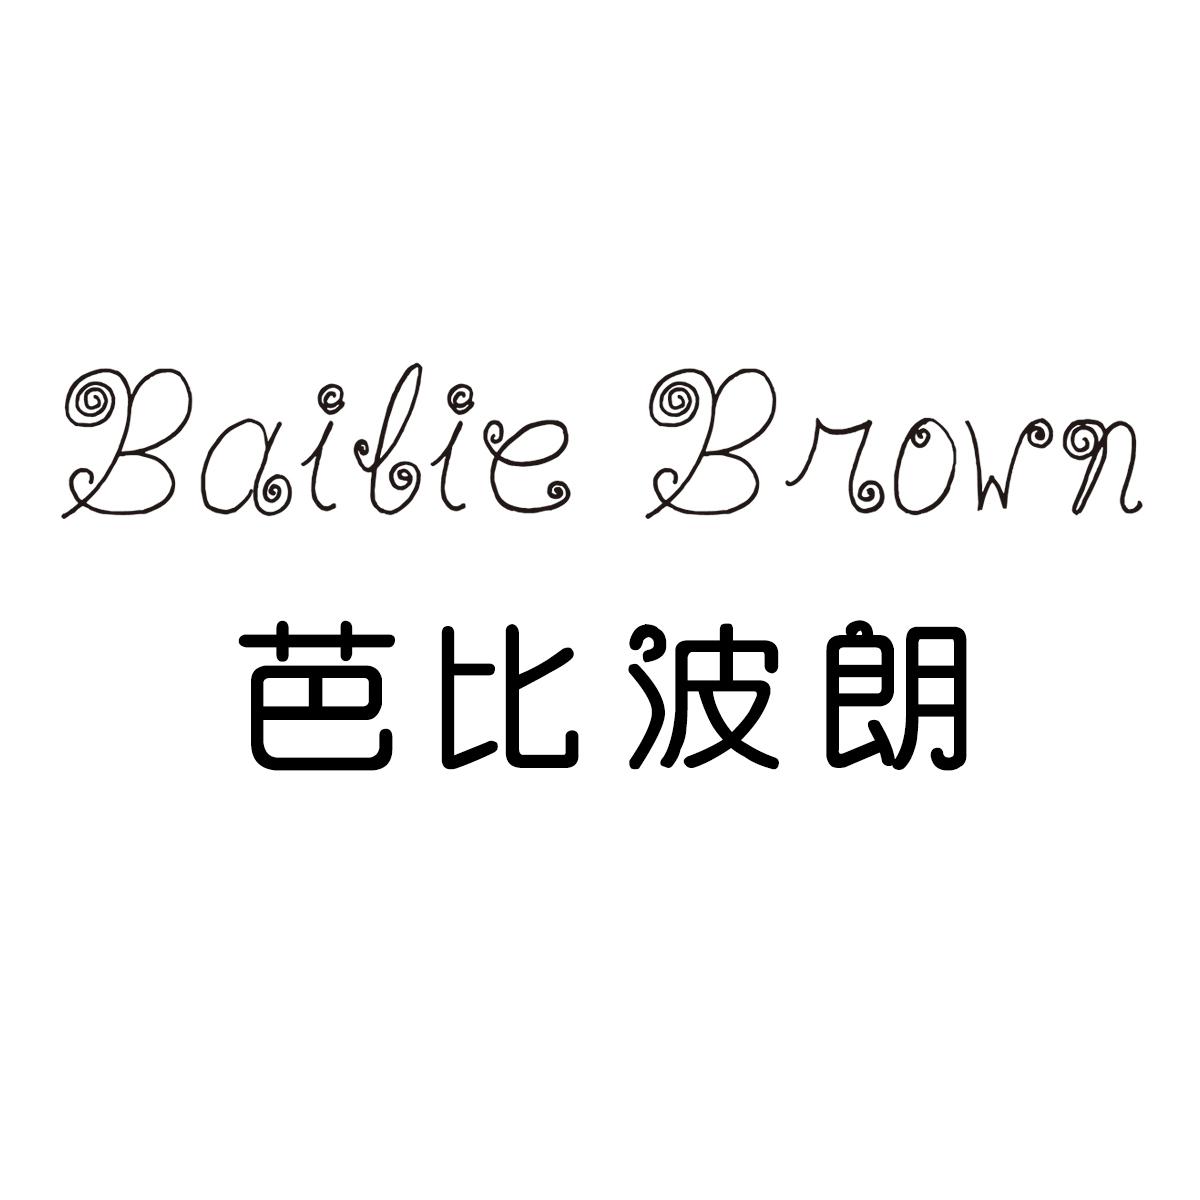 芭比布朗logo图片图片